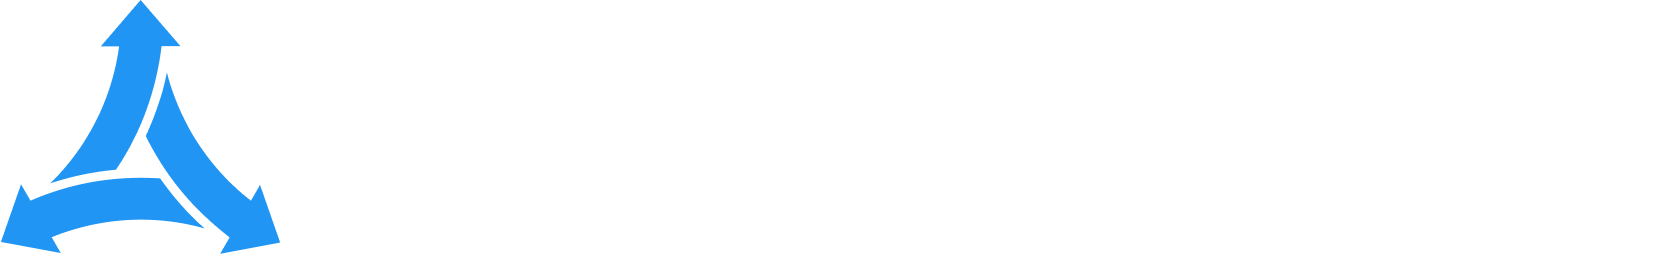 ChannelEngine.com